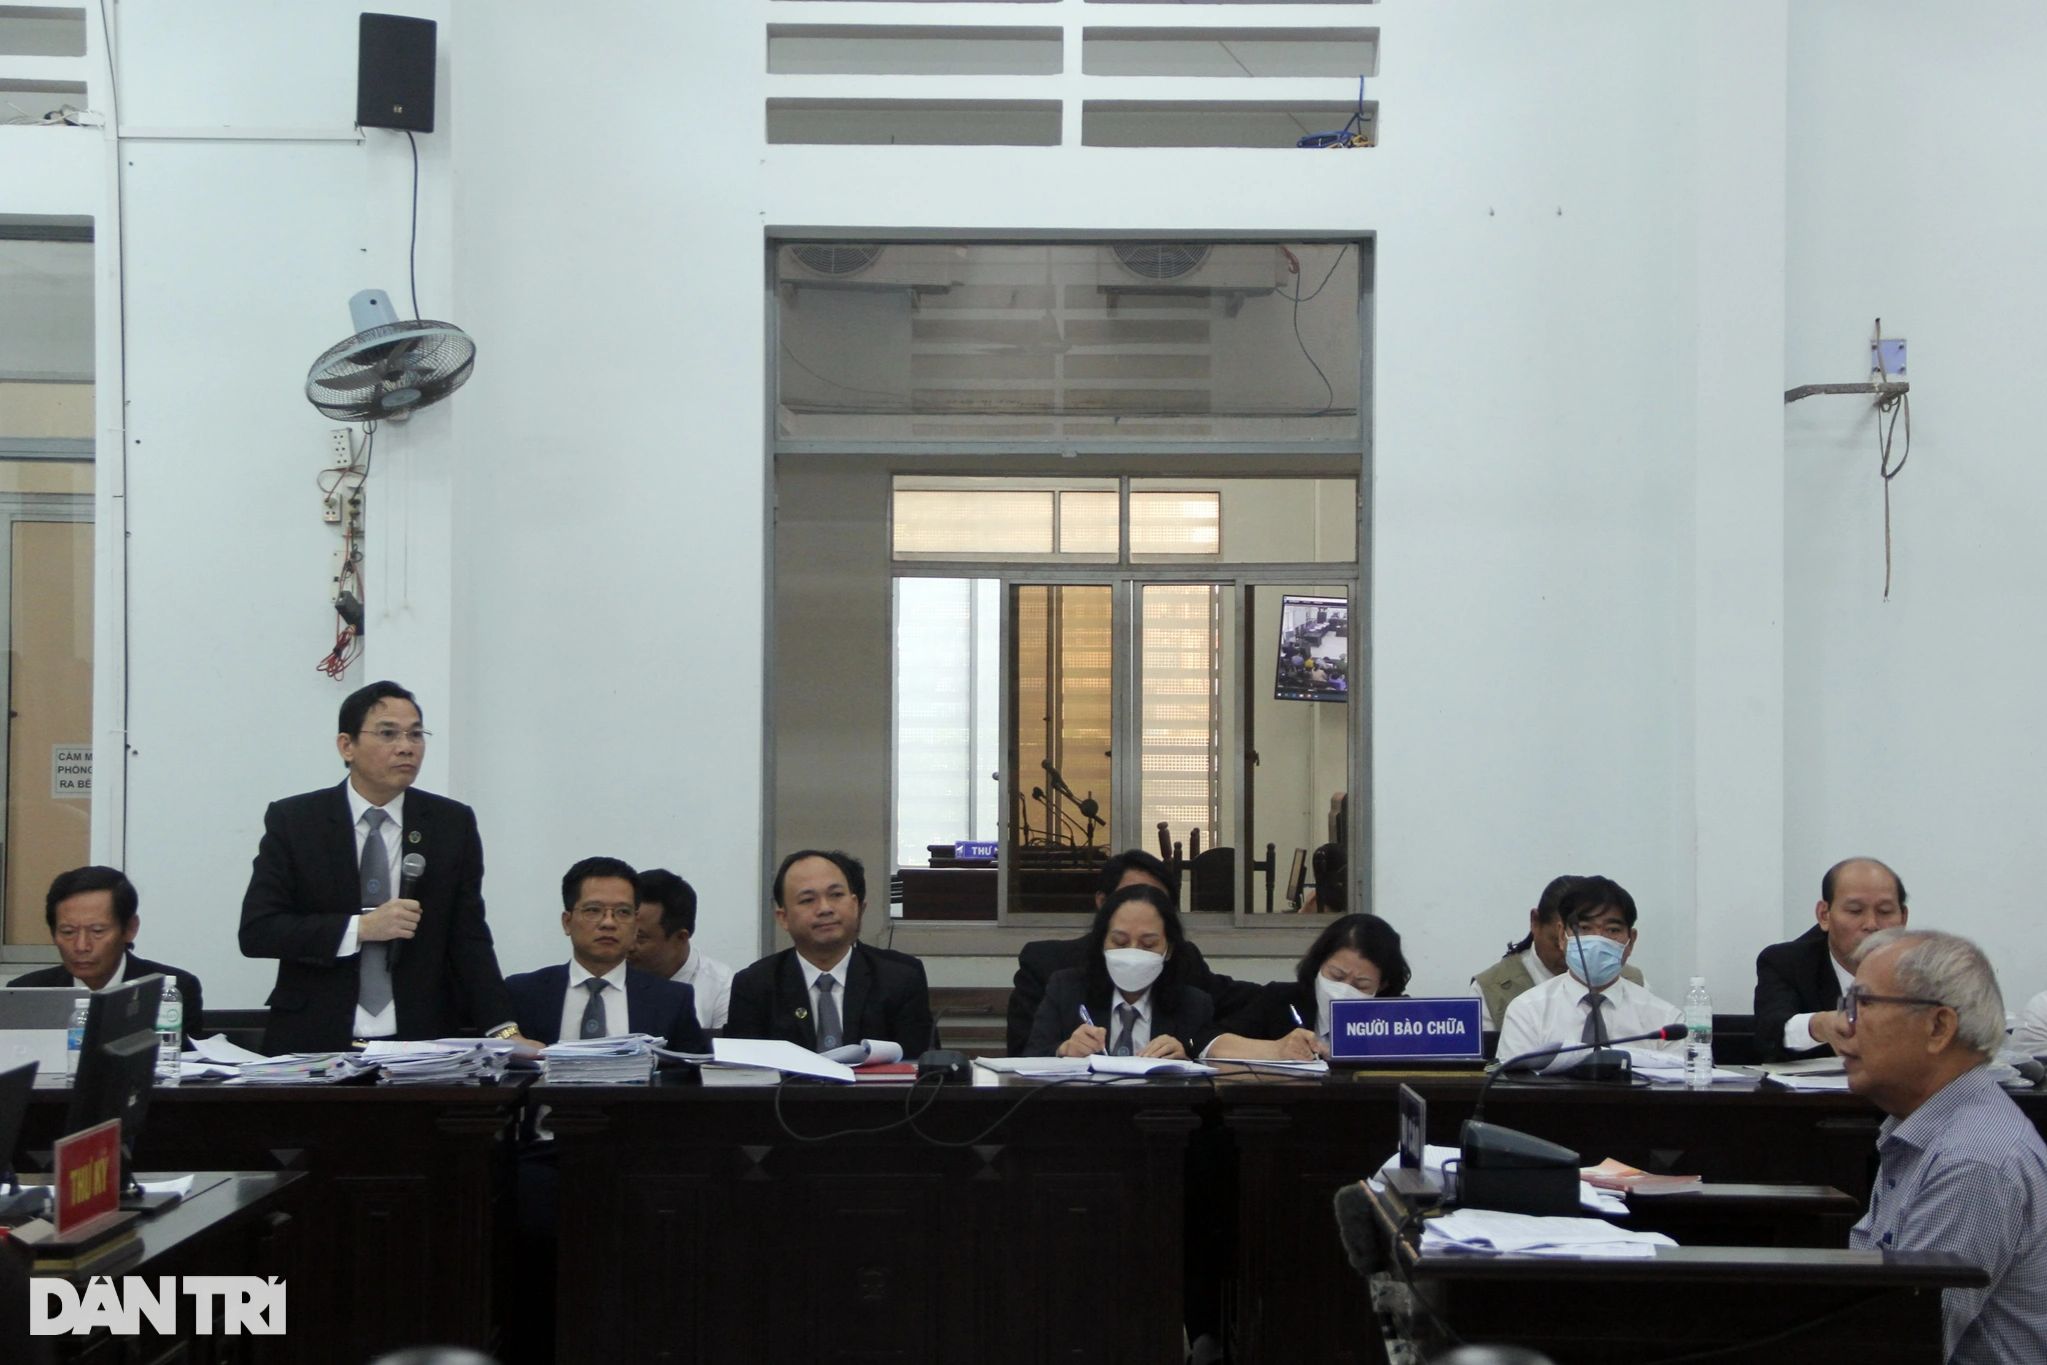 Cựu Phó Chủ tịch Khánh Hòa: Bị cáo thấy việc làm của mình là không sai - 2